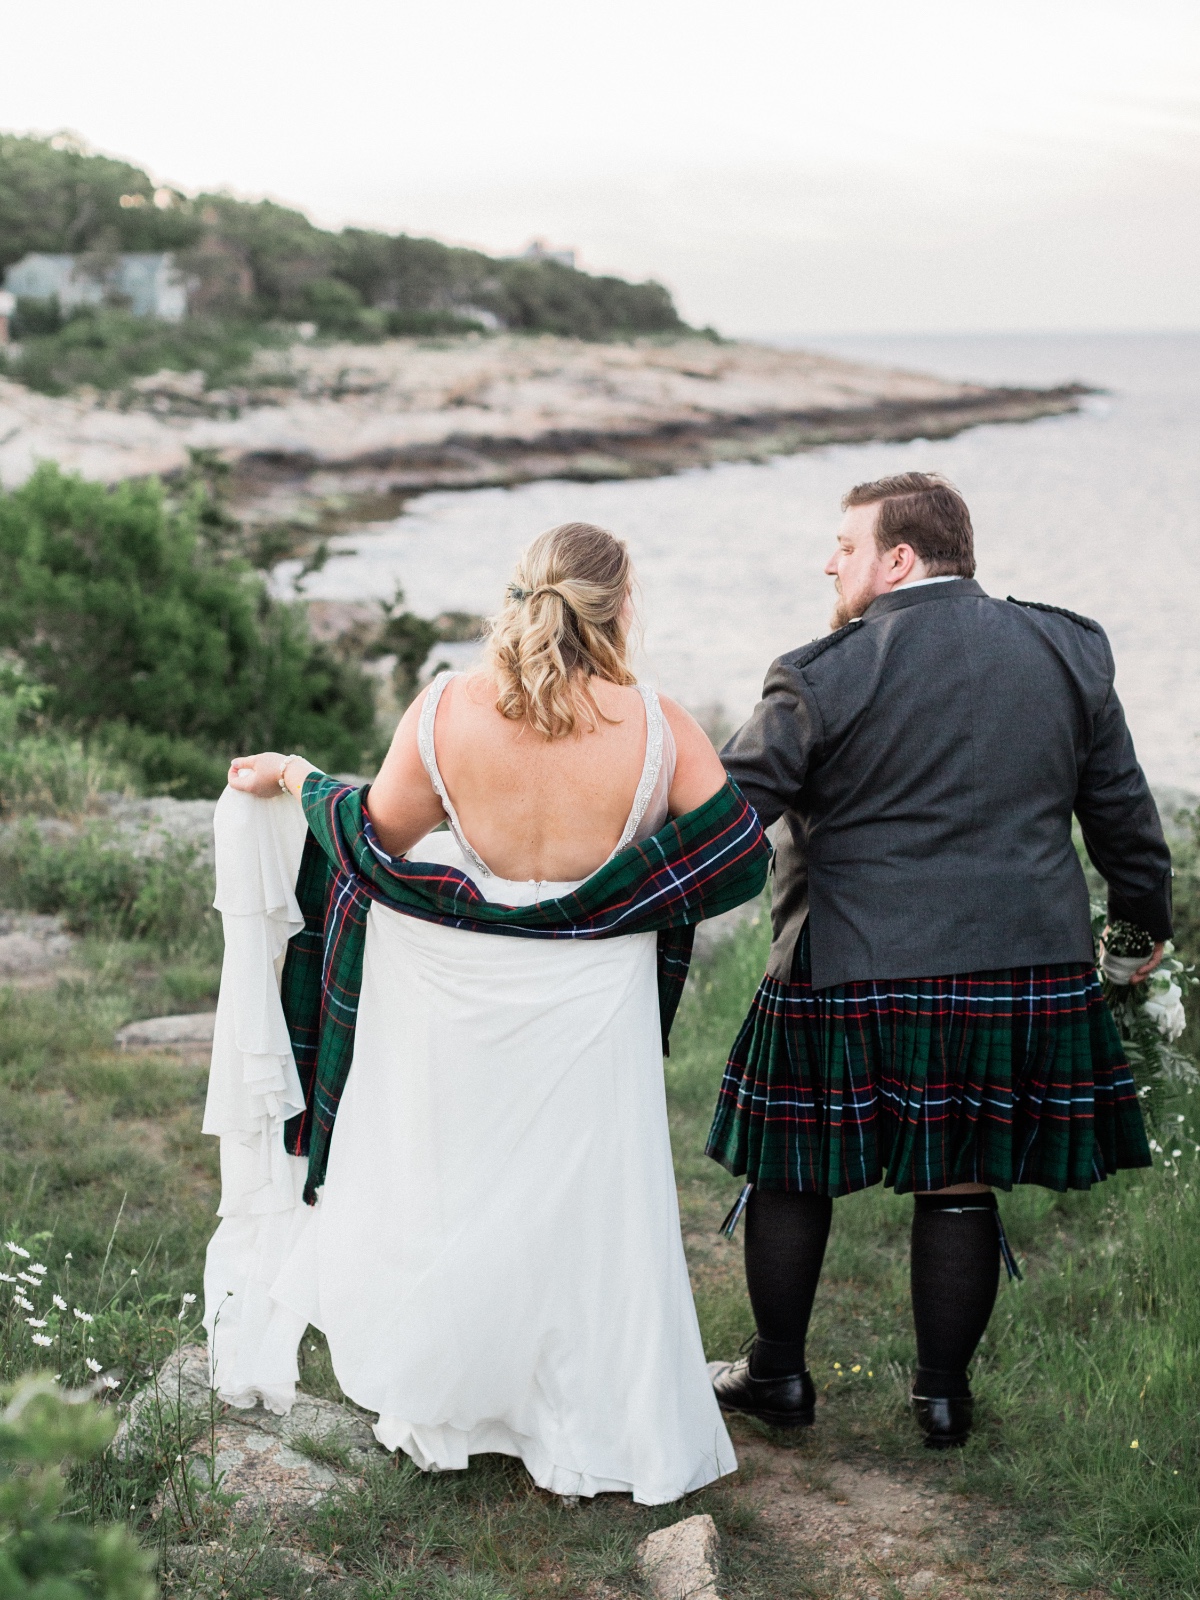 Brad and Emilee's Seaside Scottish Wedding Day